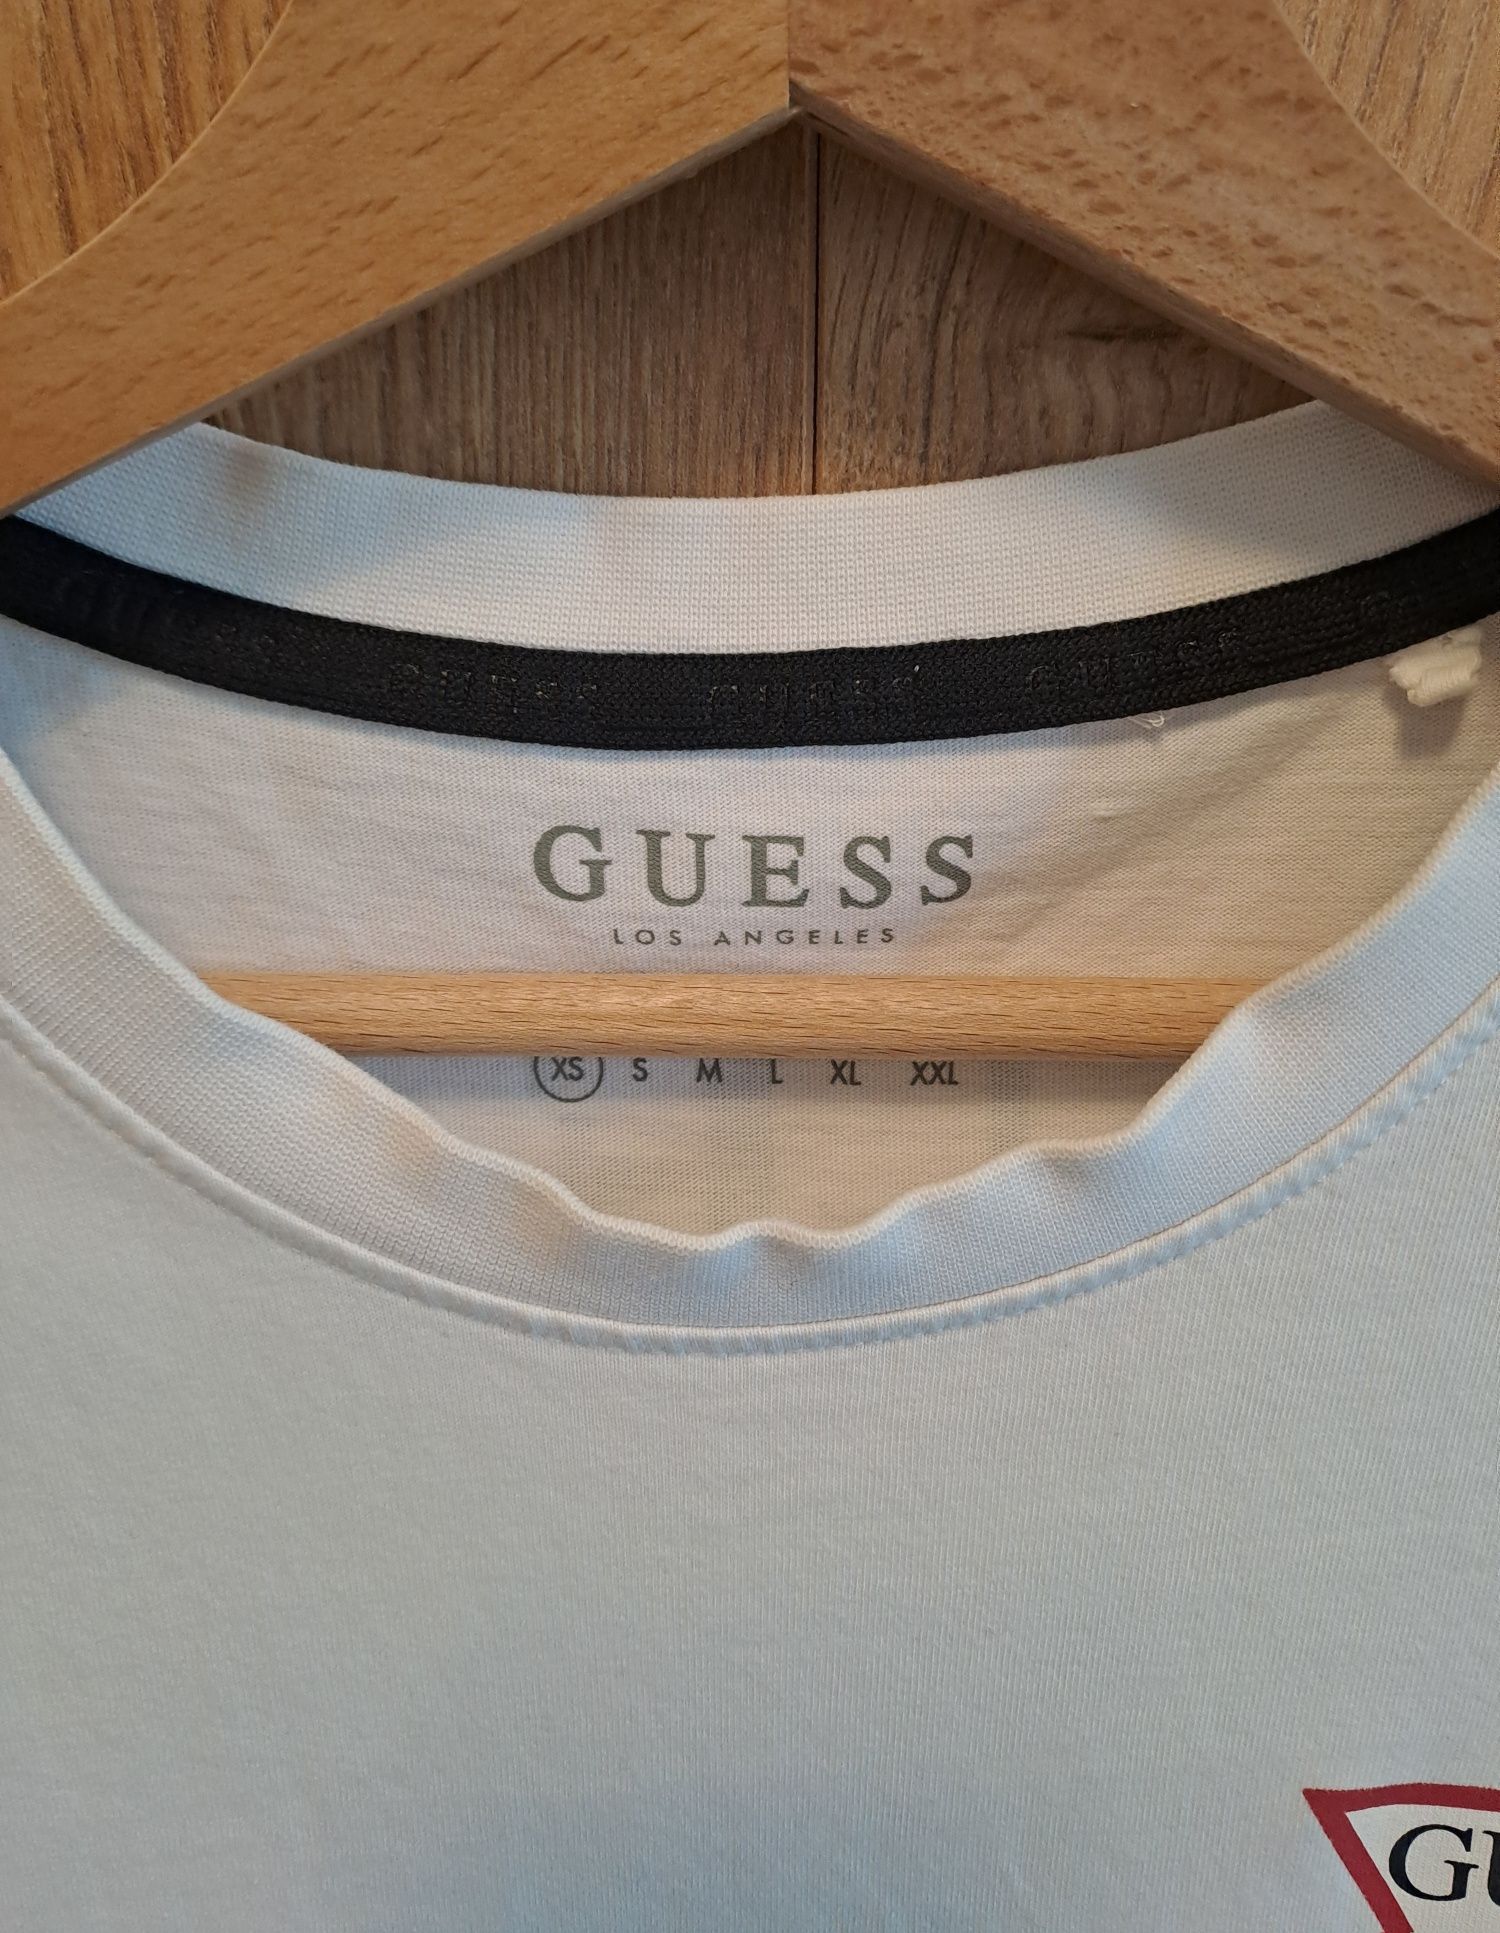 Męska/unisex biała koszulka t-shirt Guess r.XS fit S